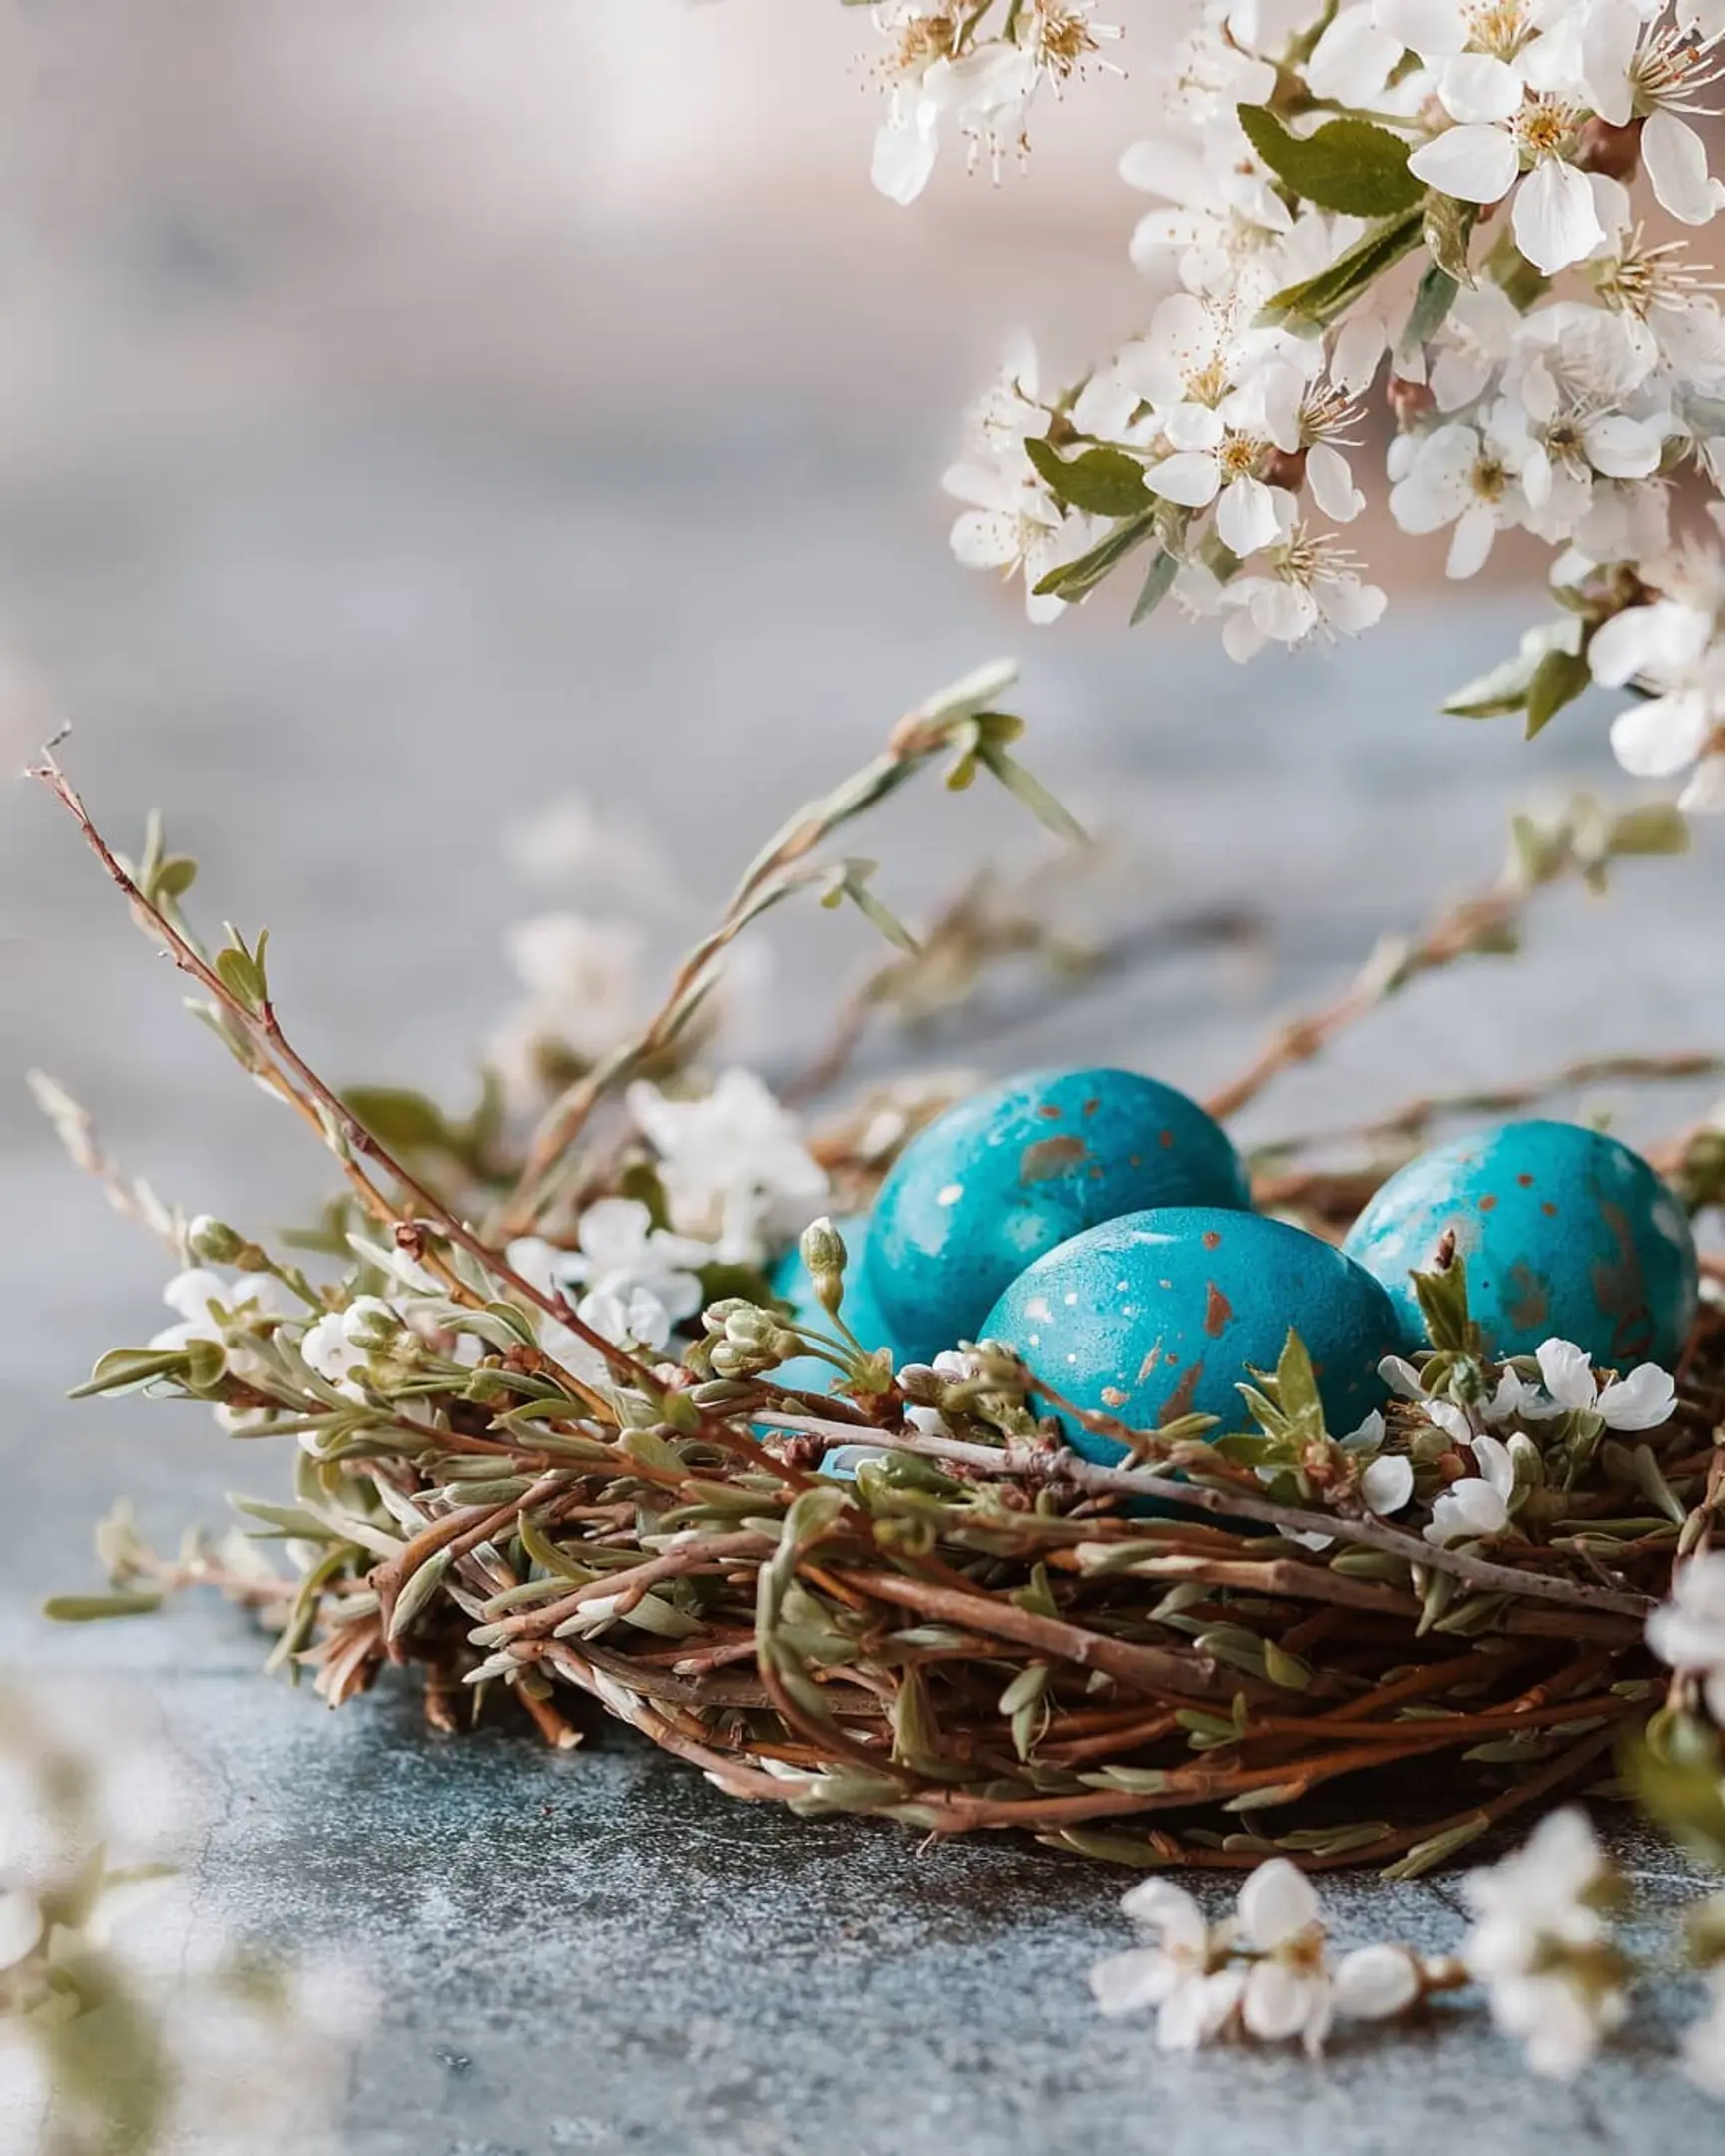 Страничен изглед на яйца. Яйца със сини петна лежат в гнездо с цветя. На преден план се виждат клони с цветя. Гнездото е върху сиво-син бетонен фон. Страничен изглед